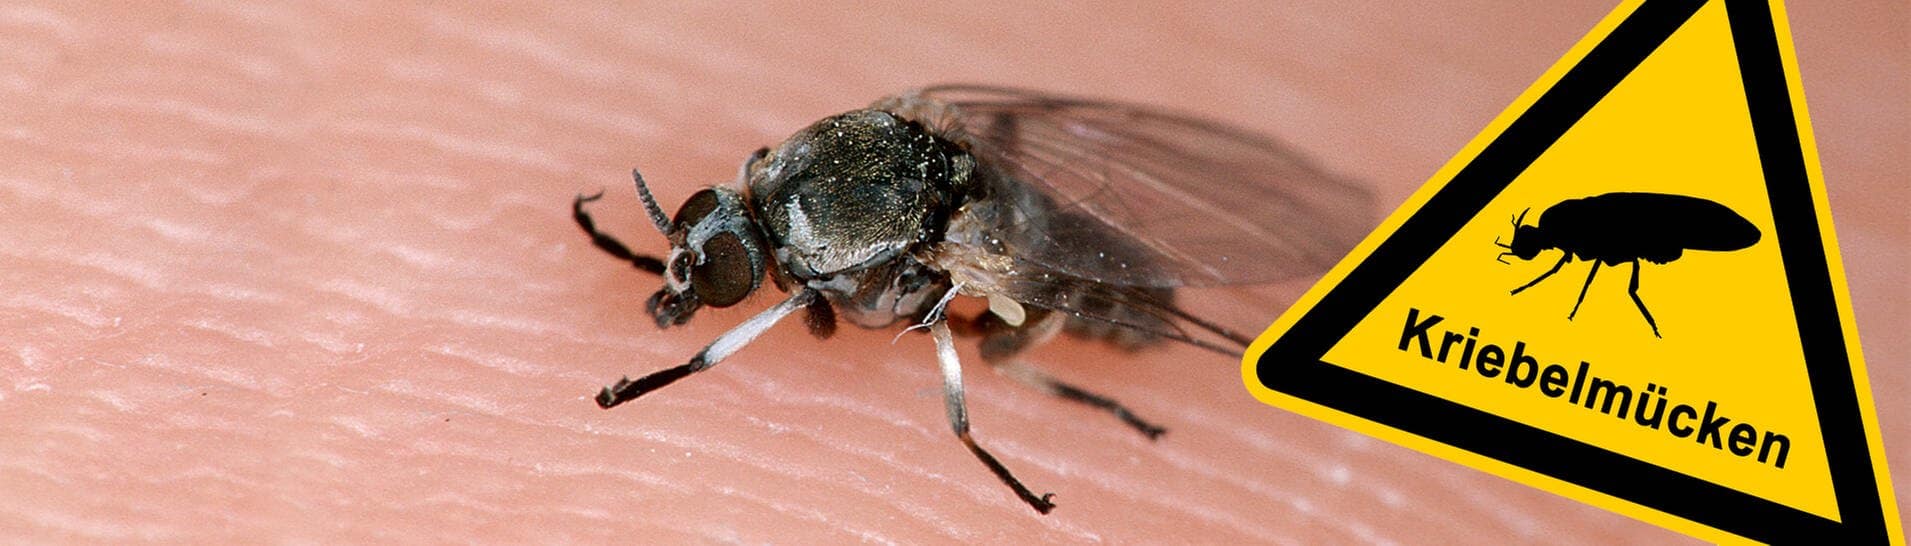 Die Kriebelmücke sitzt auf der Haut - Warnschild. Die kleine Mücke fühlt sich in Deutschland immer wohler. Ihr Stich ist ein Biss. Hier erfährst du, was du dagegen tun kannst.